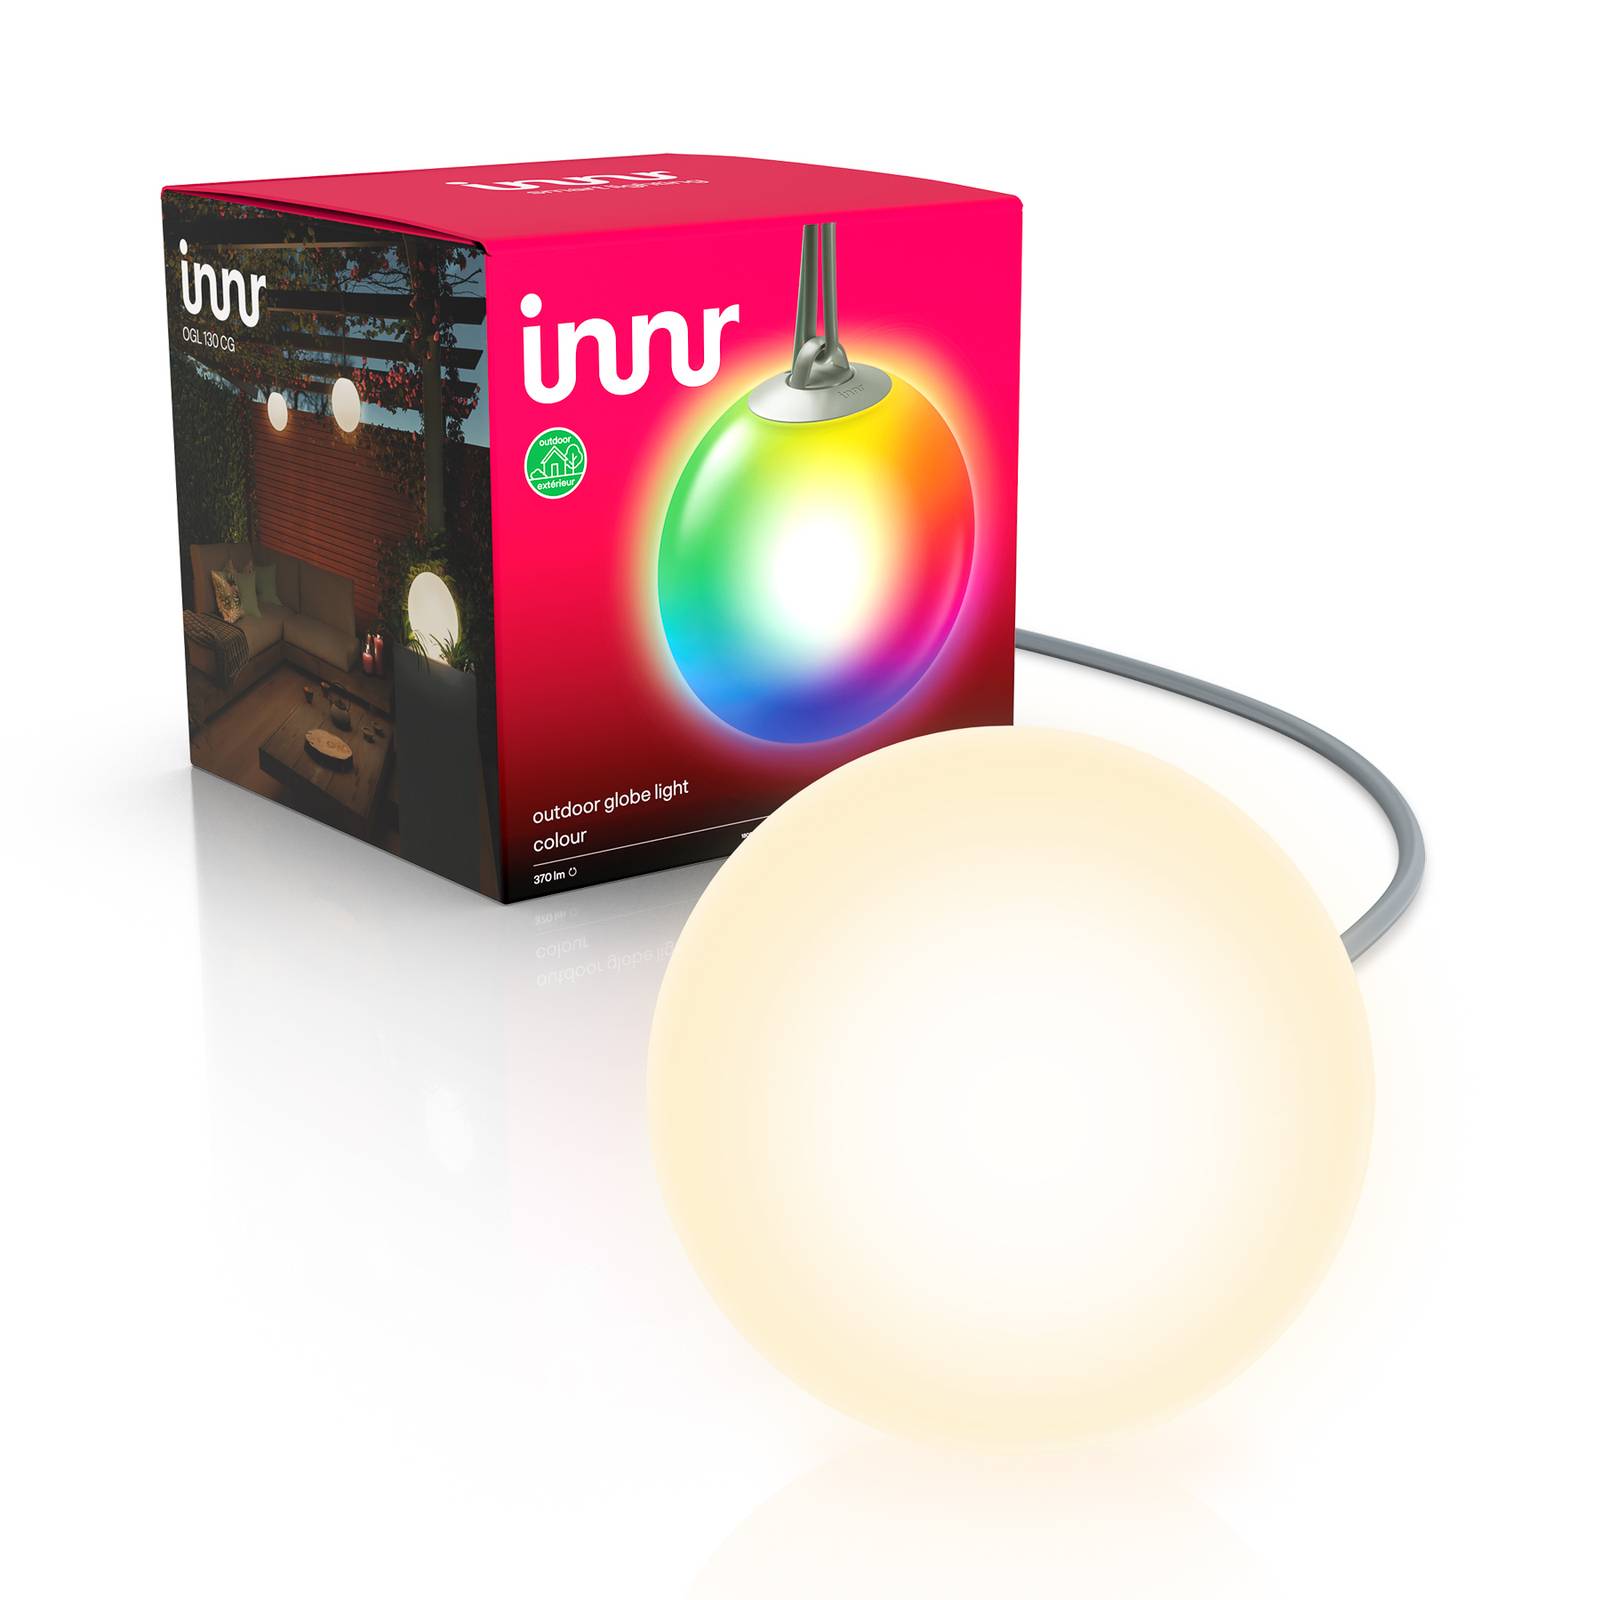 Inn Smart Outdoor Globe Colour LED-kule ekstra